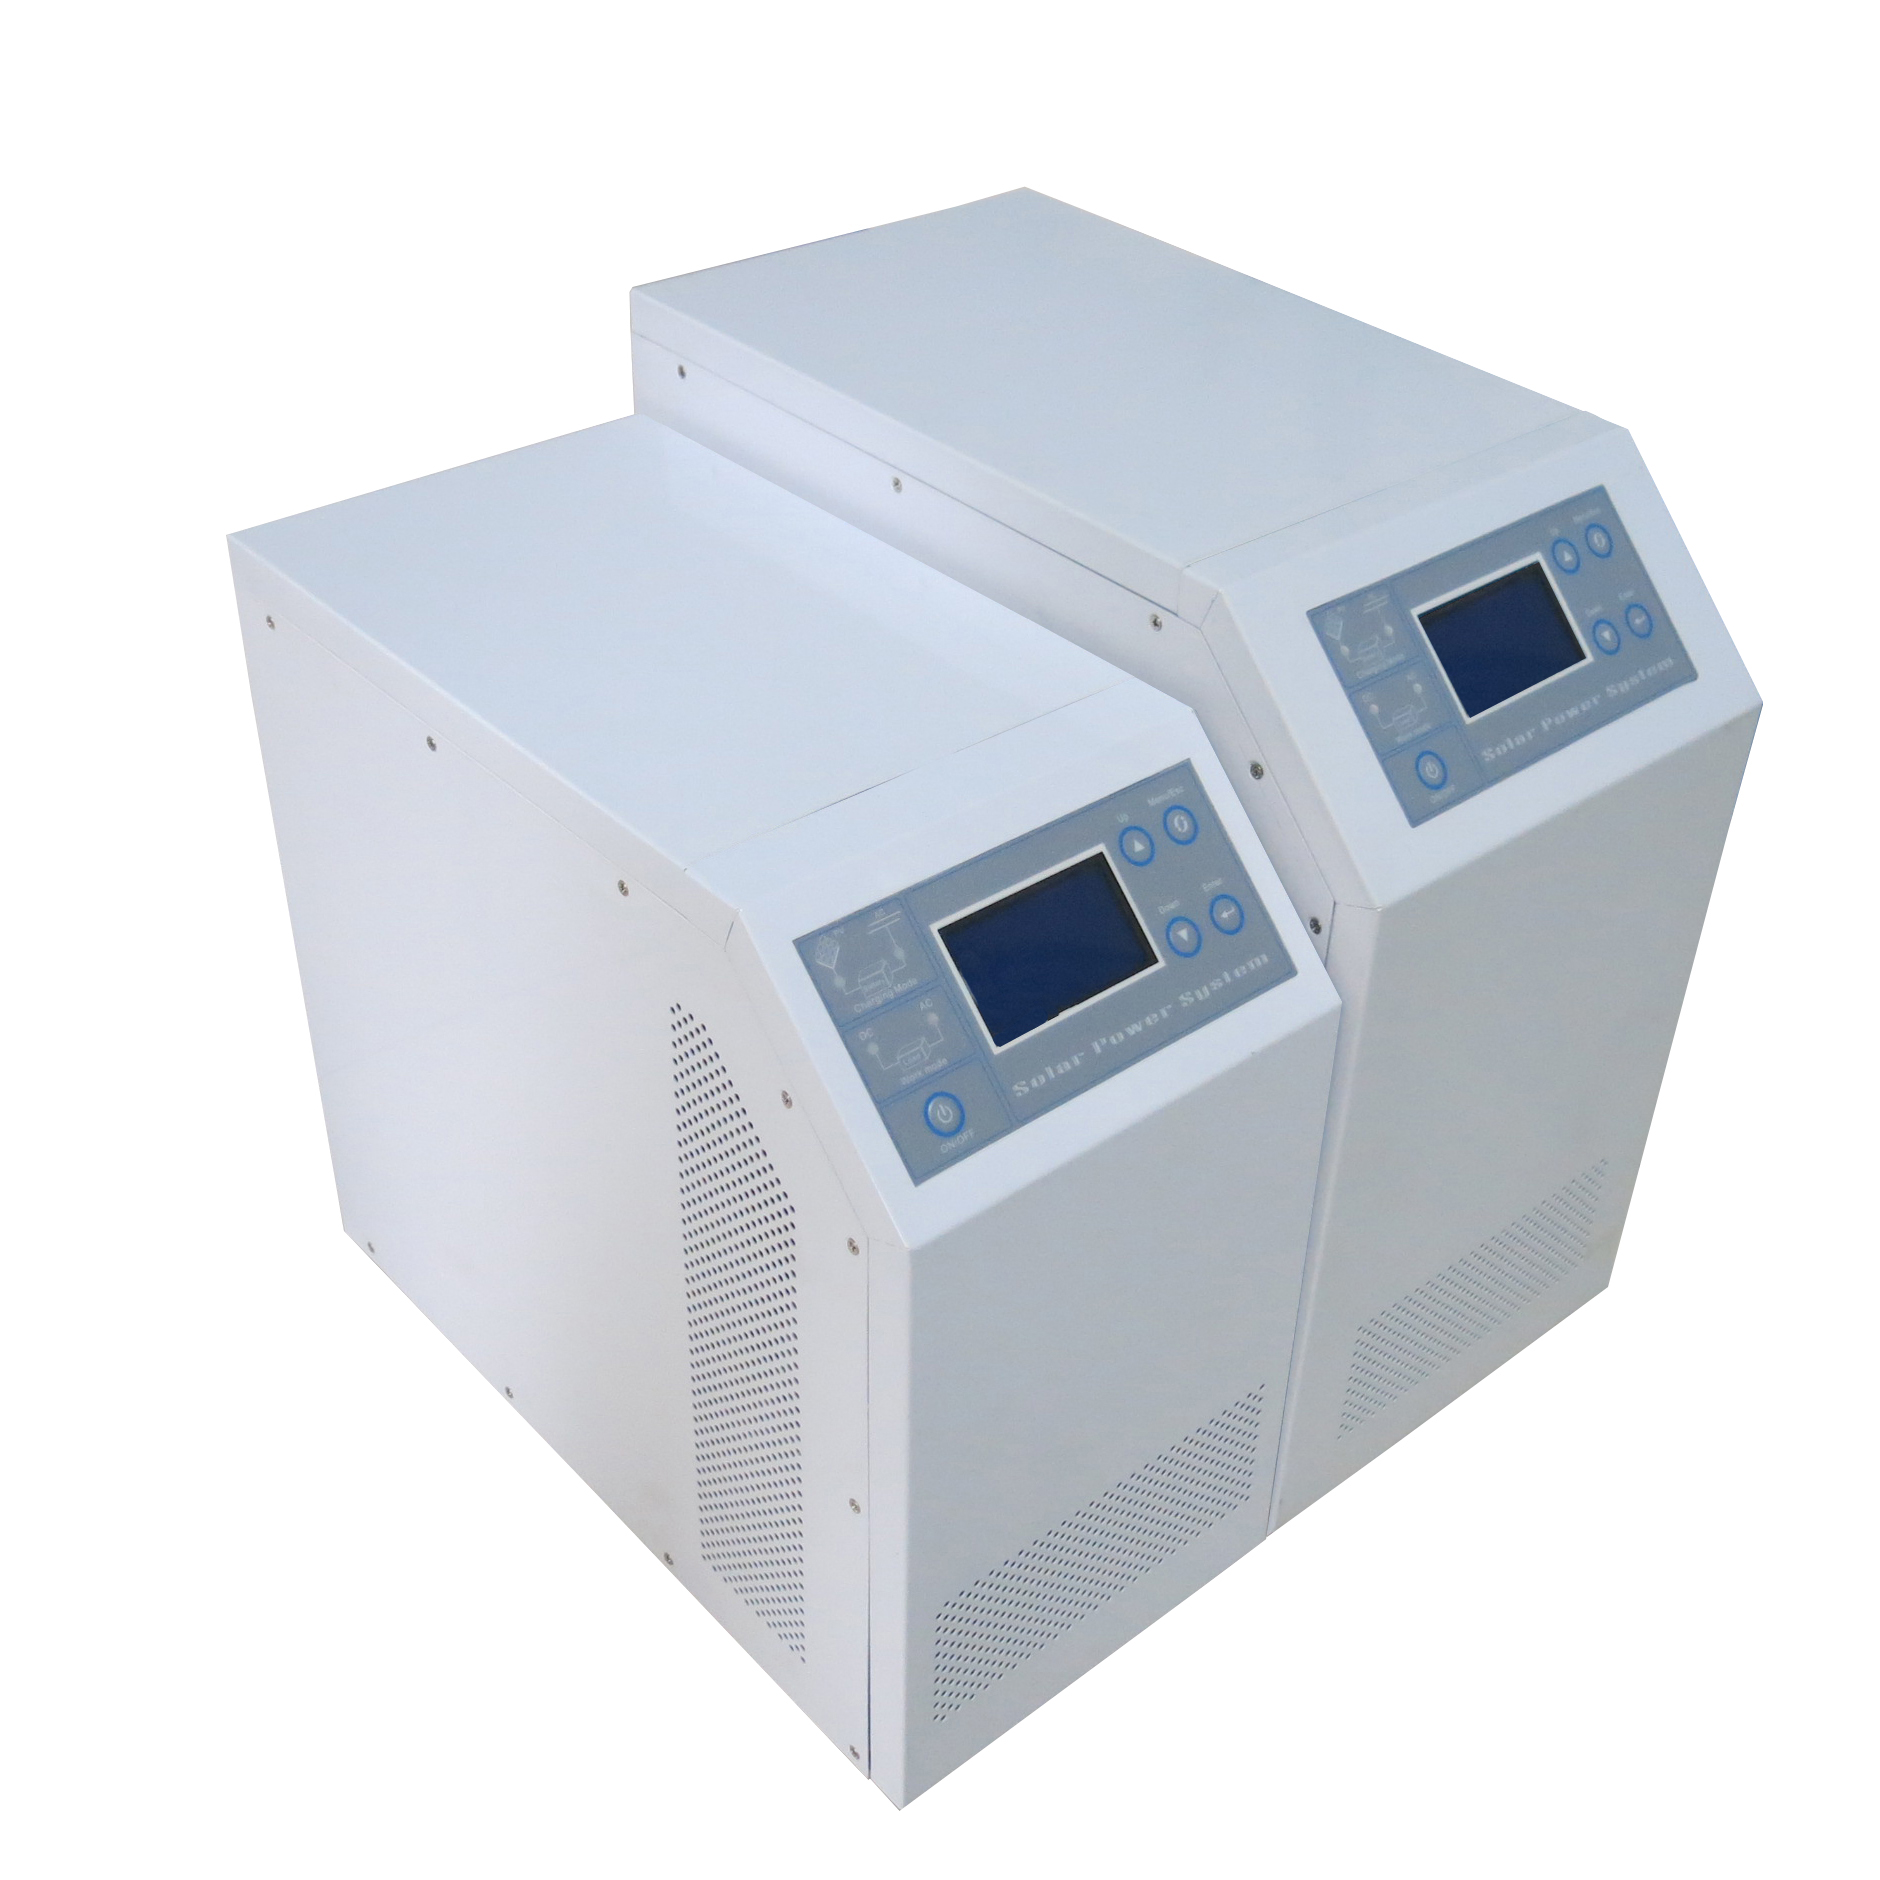 L'invertitore puro dell'onda di seno multifunzione di alta qualità built-in MPPT regolatore solare I-Panda HPC 1000W